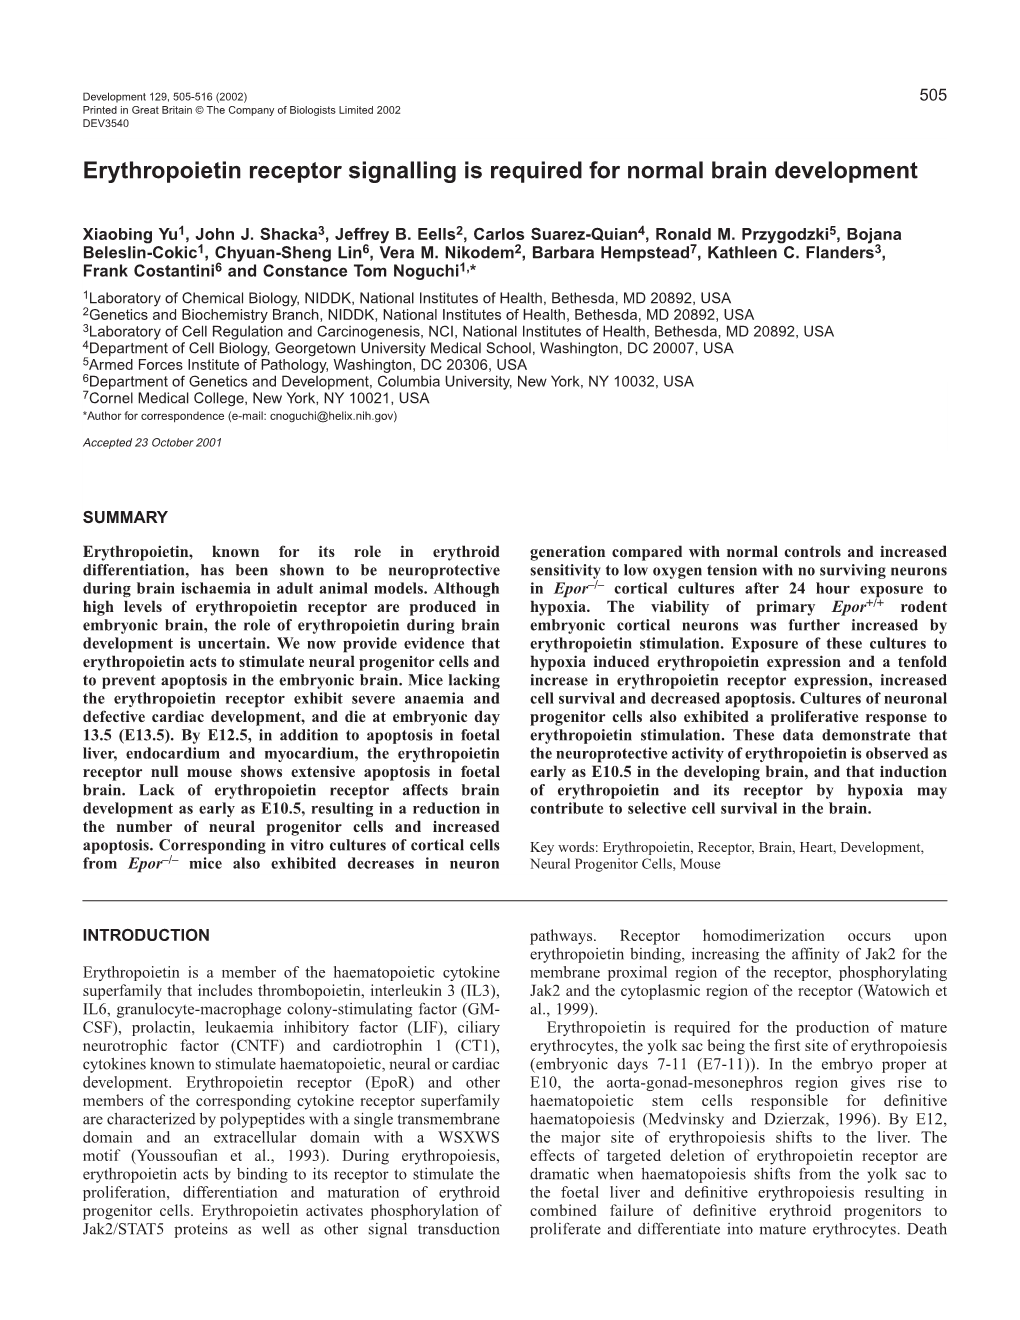 Erythropoietin and Brain Development 507